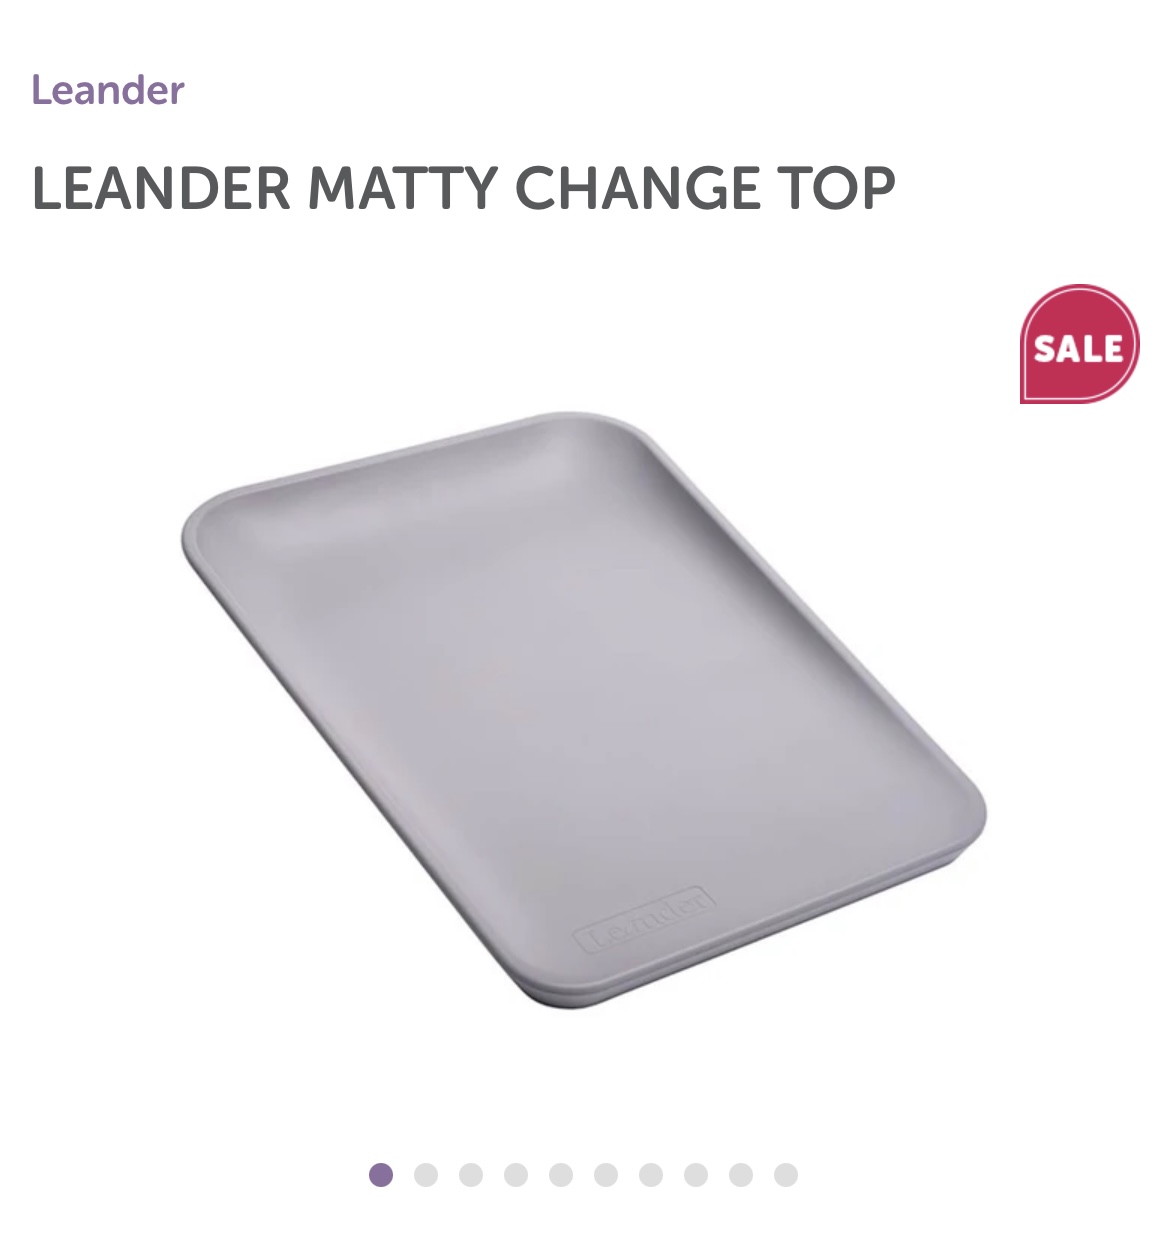 Leander change mat